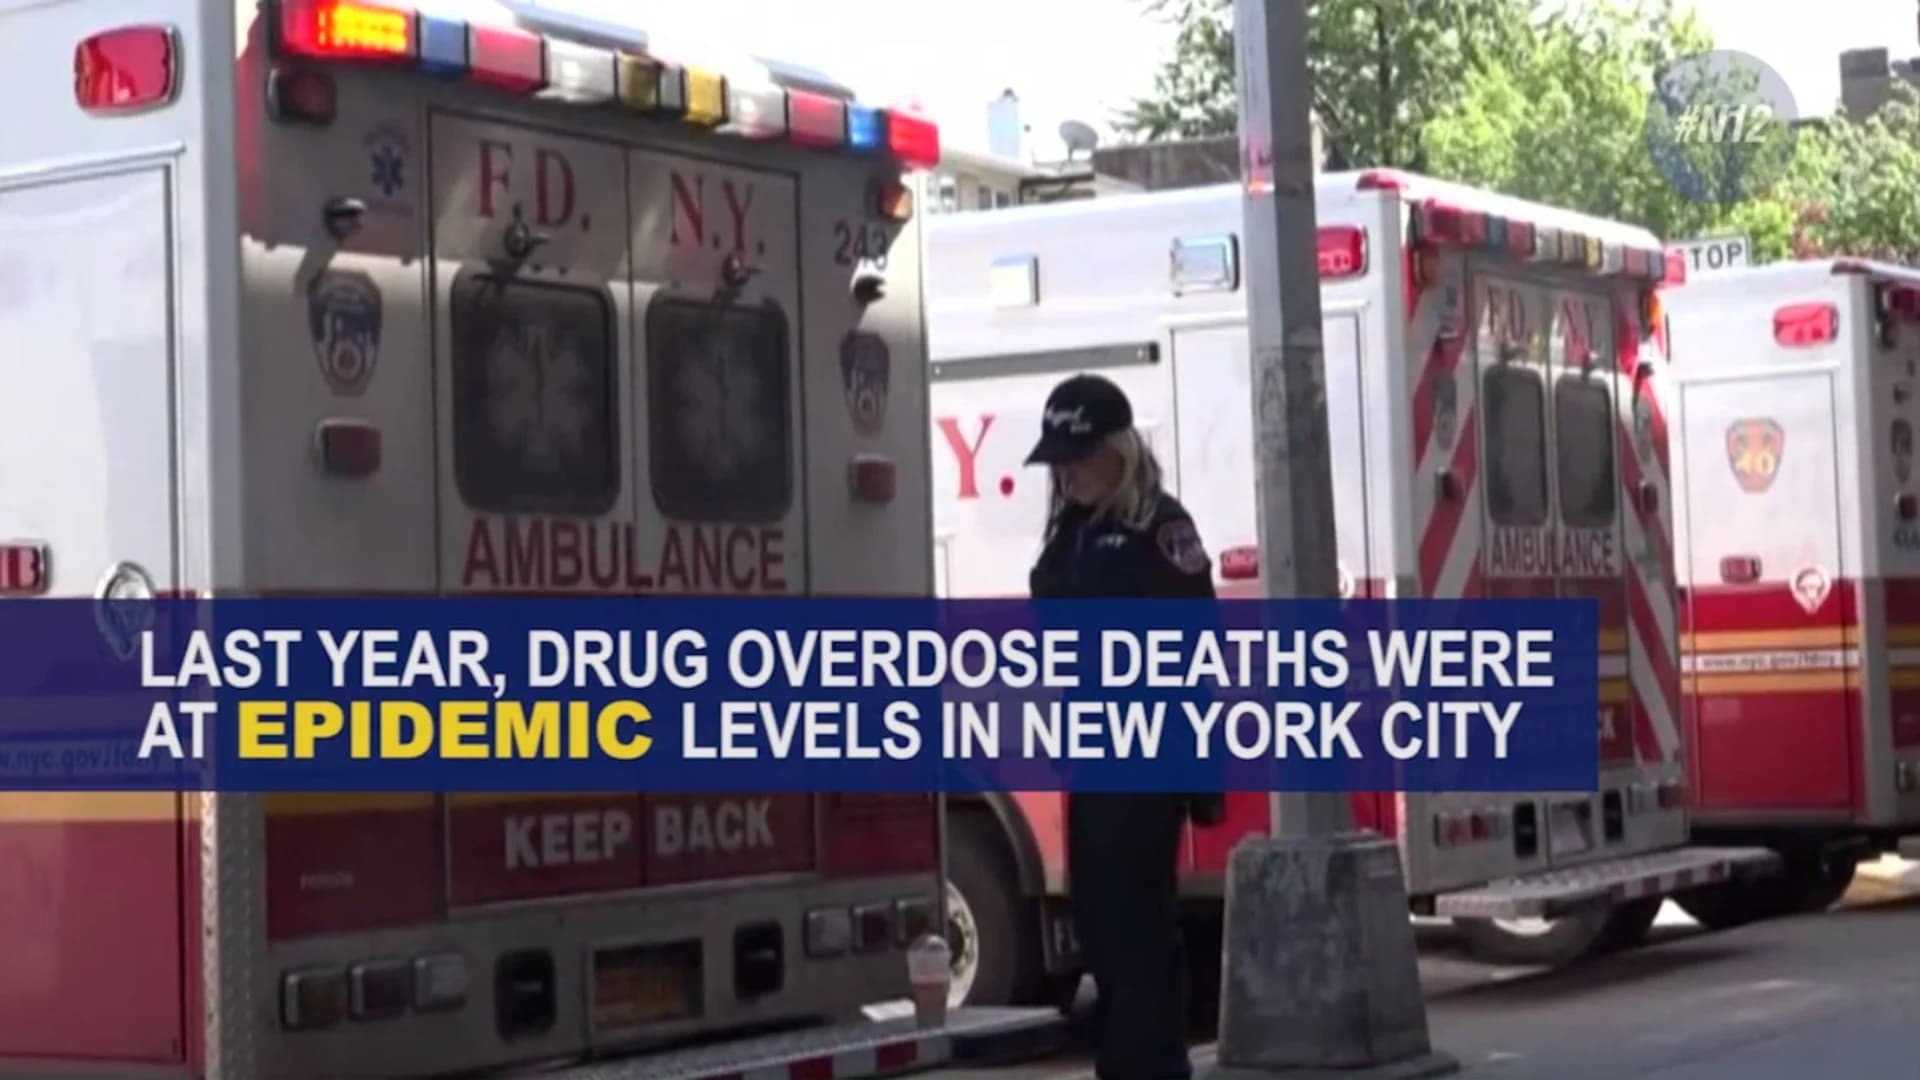 #N12BX: Drug overdoses in New York City